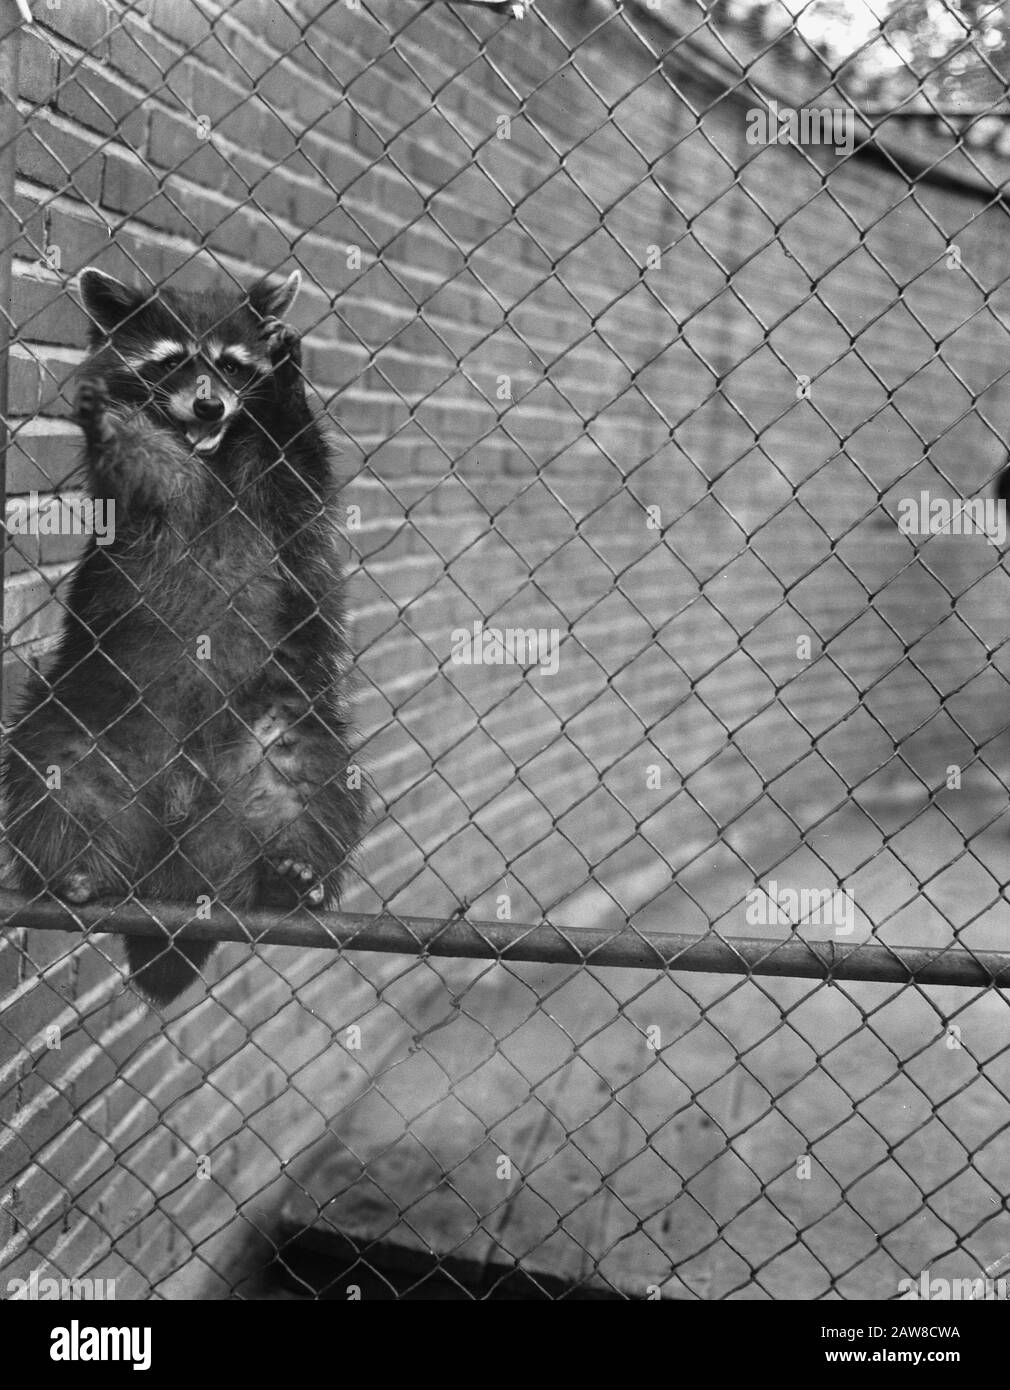 Riprese allo zoo di Blijdorp a Rotterdam. Raccoon Parties Data: 17 Luglio 1957 Località: Rotterdam, South Holland Nome Persona: Raccoon Parties Istituto Nome: Zoo Foto Stock